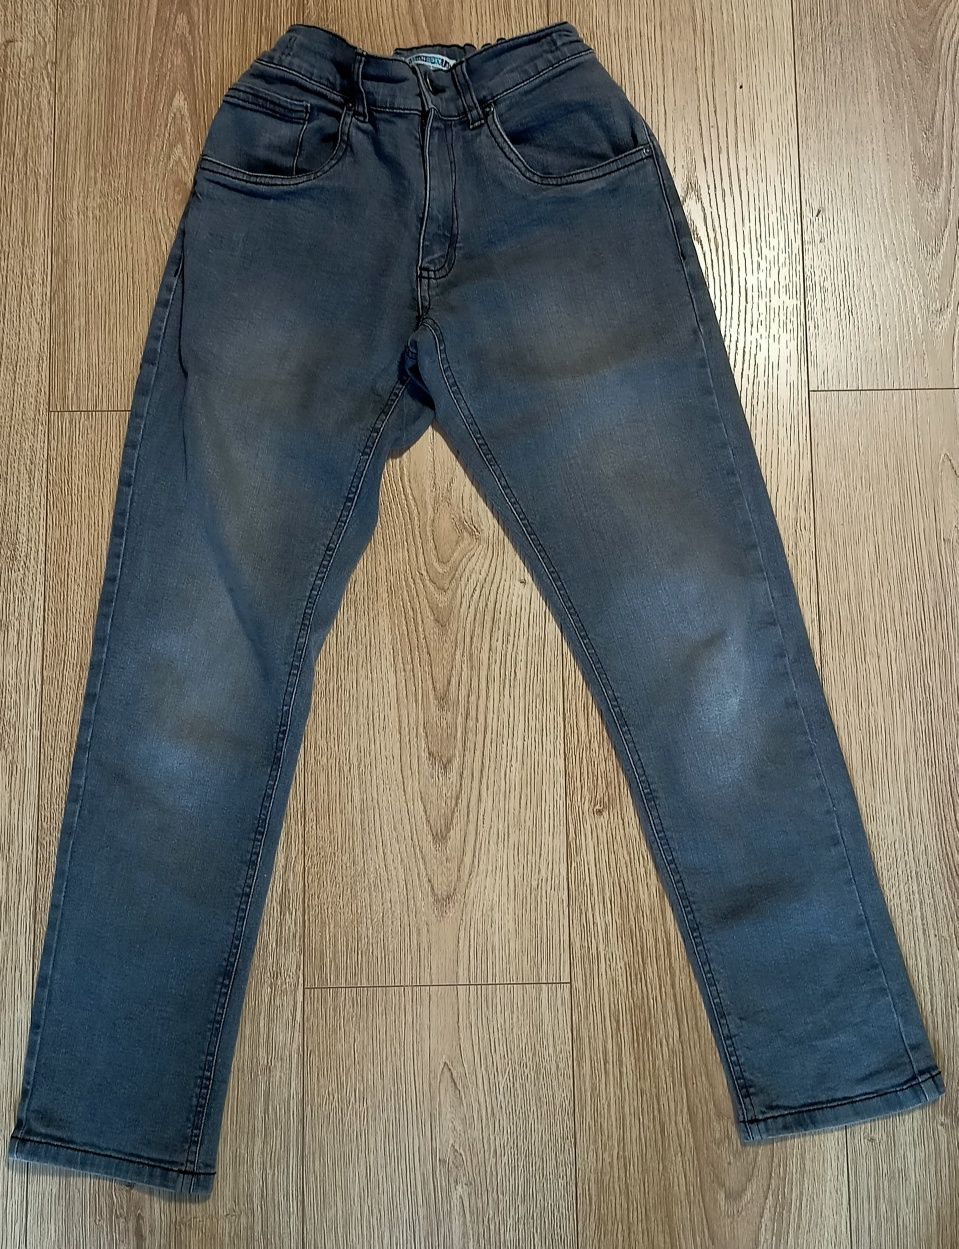 Spodnie jeansowe szare dla chłopca 146/152 stan bdb